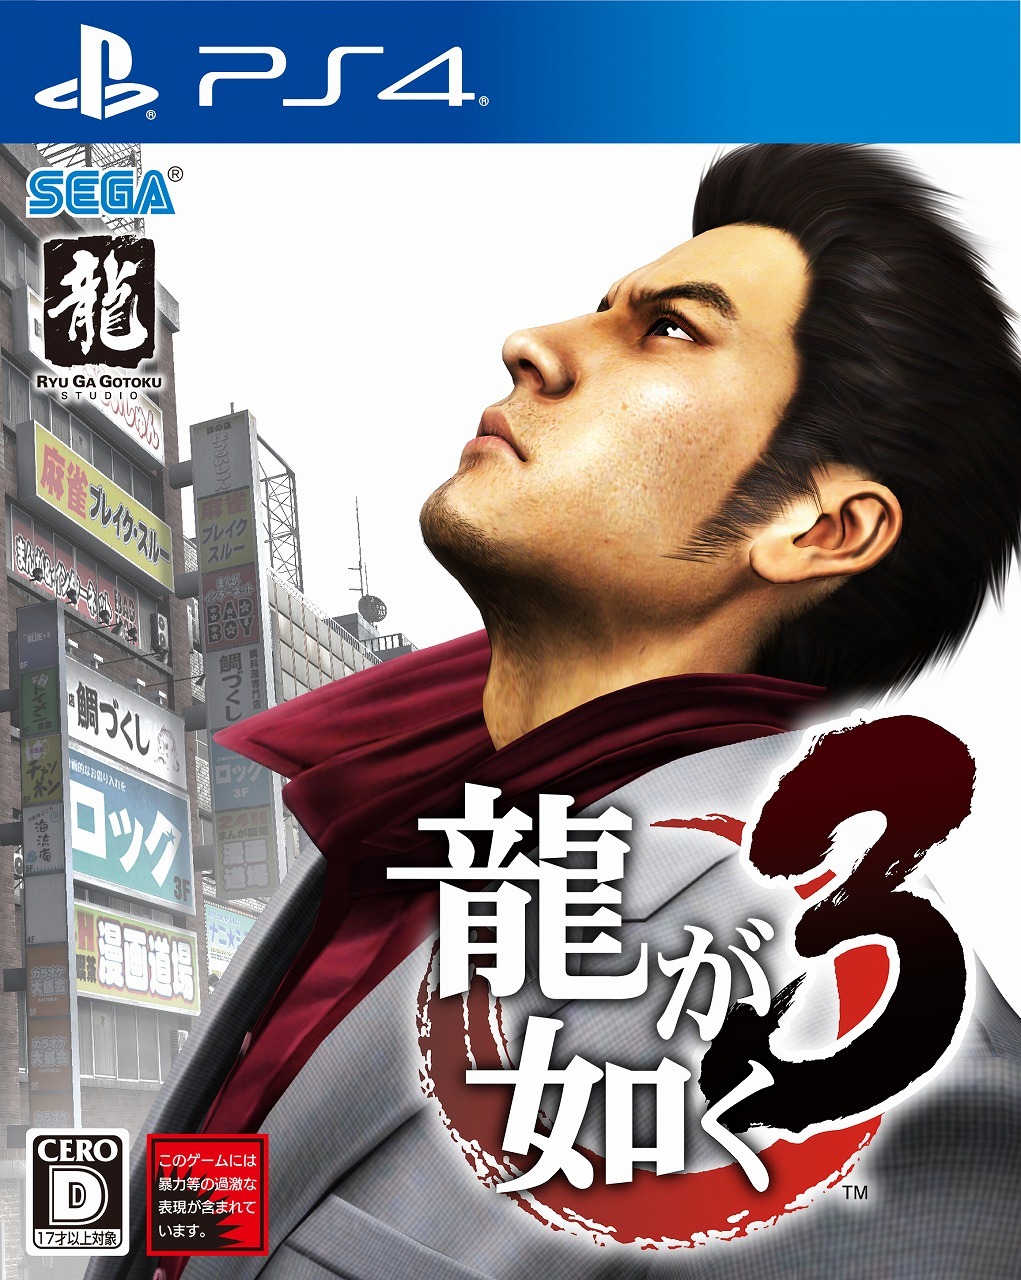 PS4版『龍が如く3』パッケージデザイン (C)SEGA